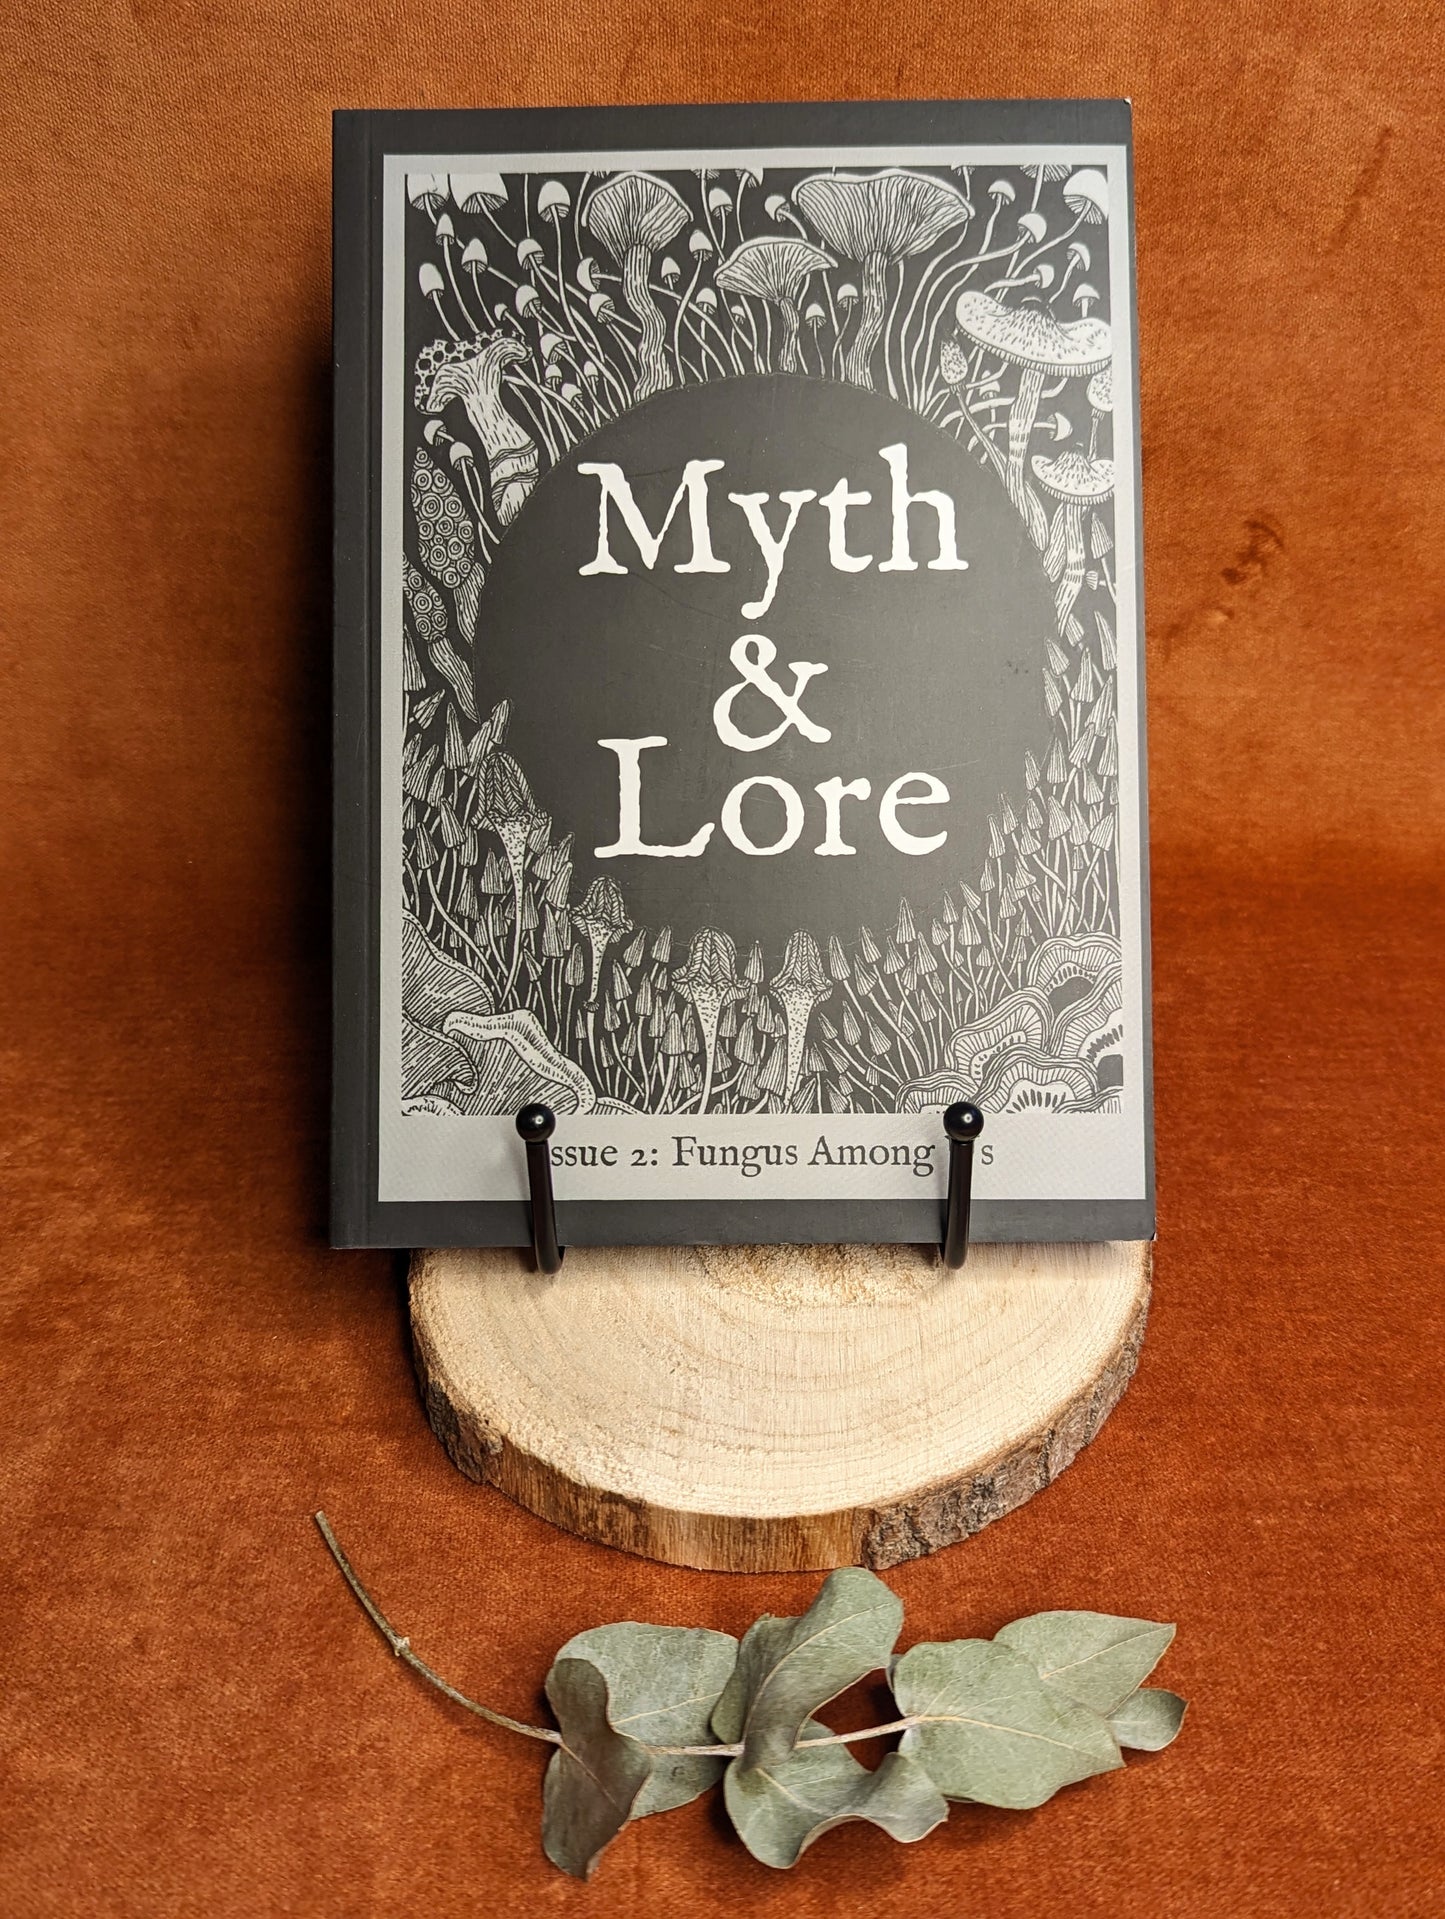 Myth & Lore Zine 'Issue 2: Fungus Among Us'